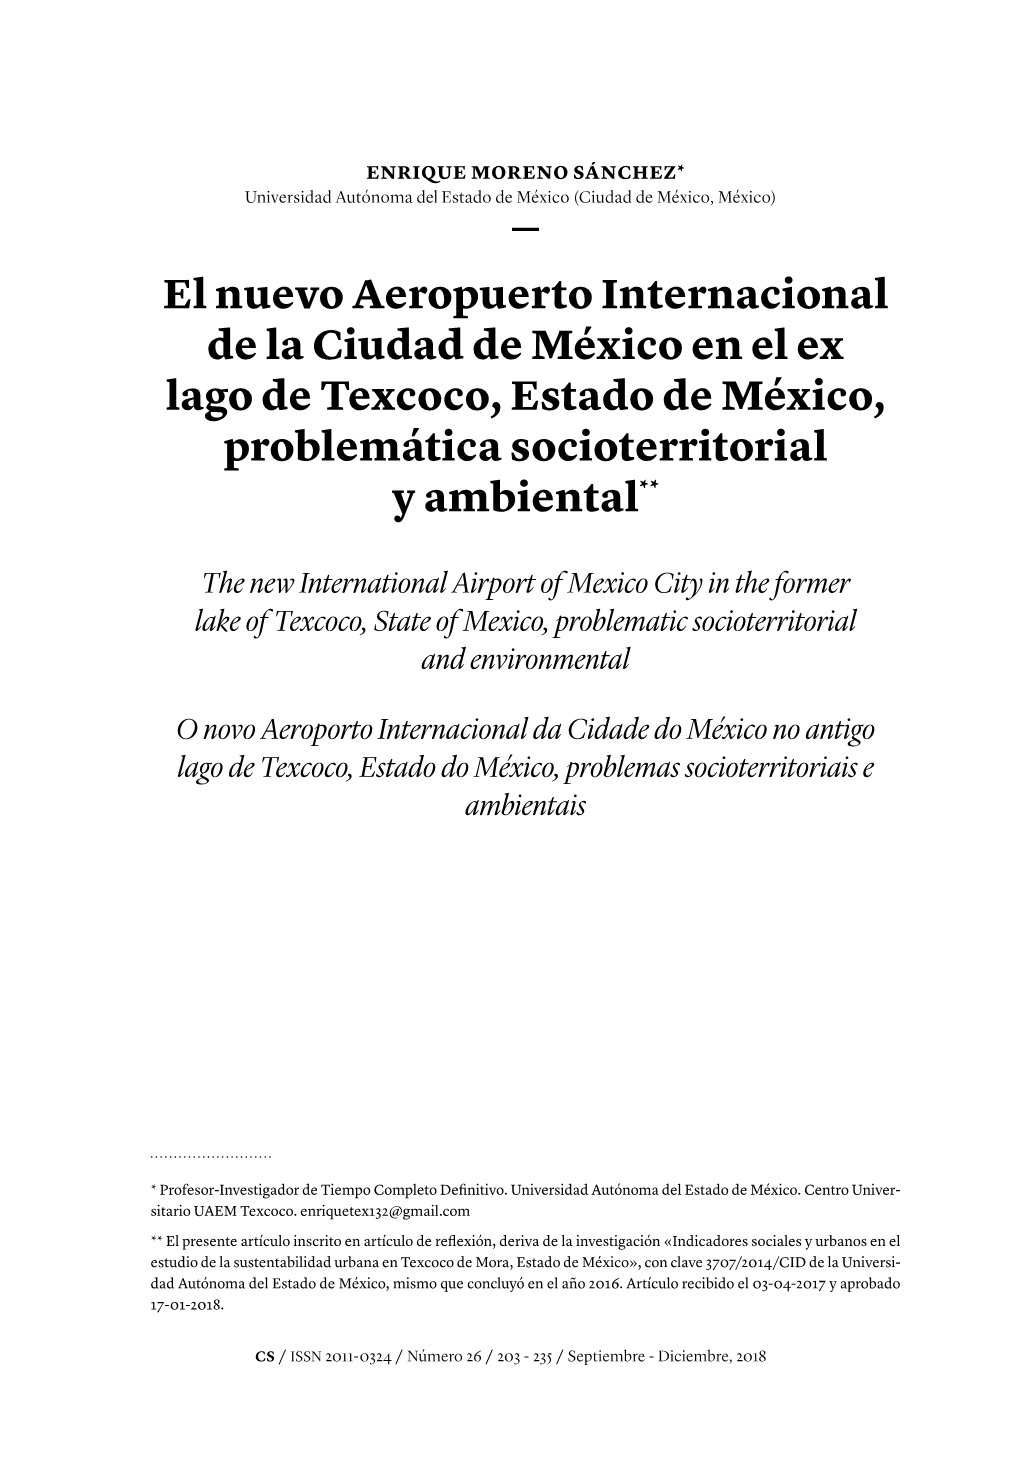 El Nuevo Aeropuerto Internacional De La Ciudad De México En El Ex Lago De Texcoco, Estado De México, Problemática Socioterritorial Y Ambiental**